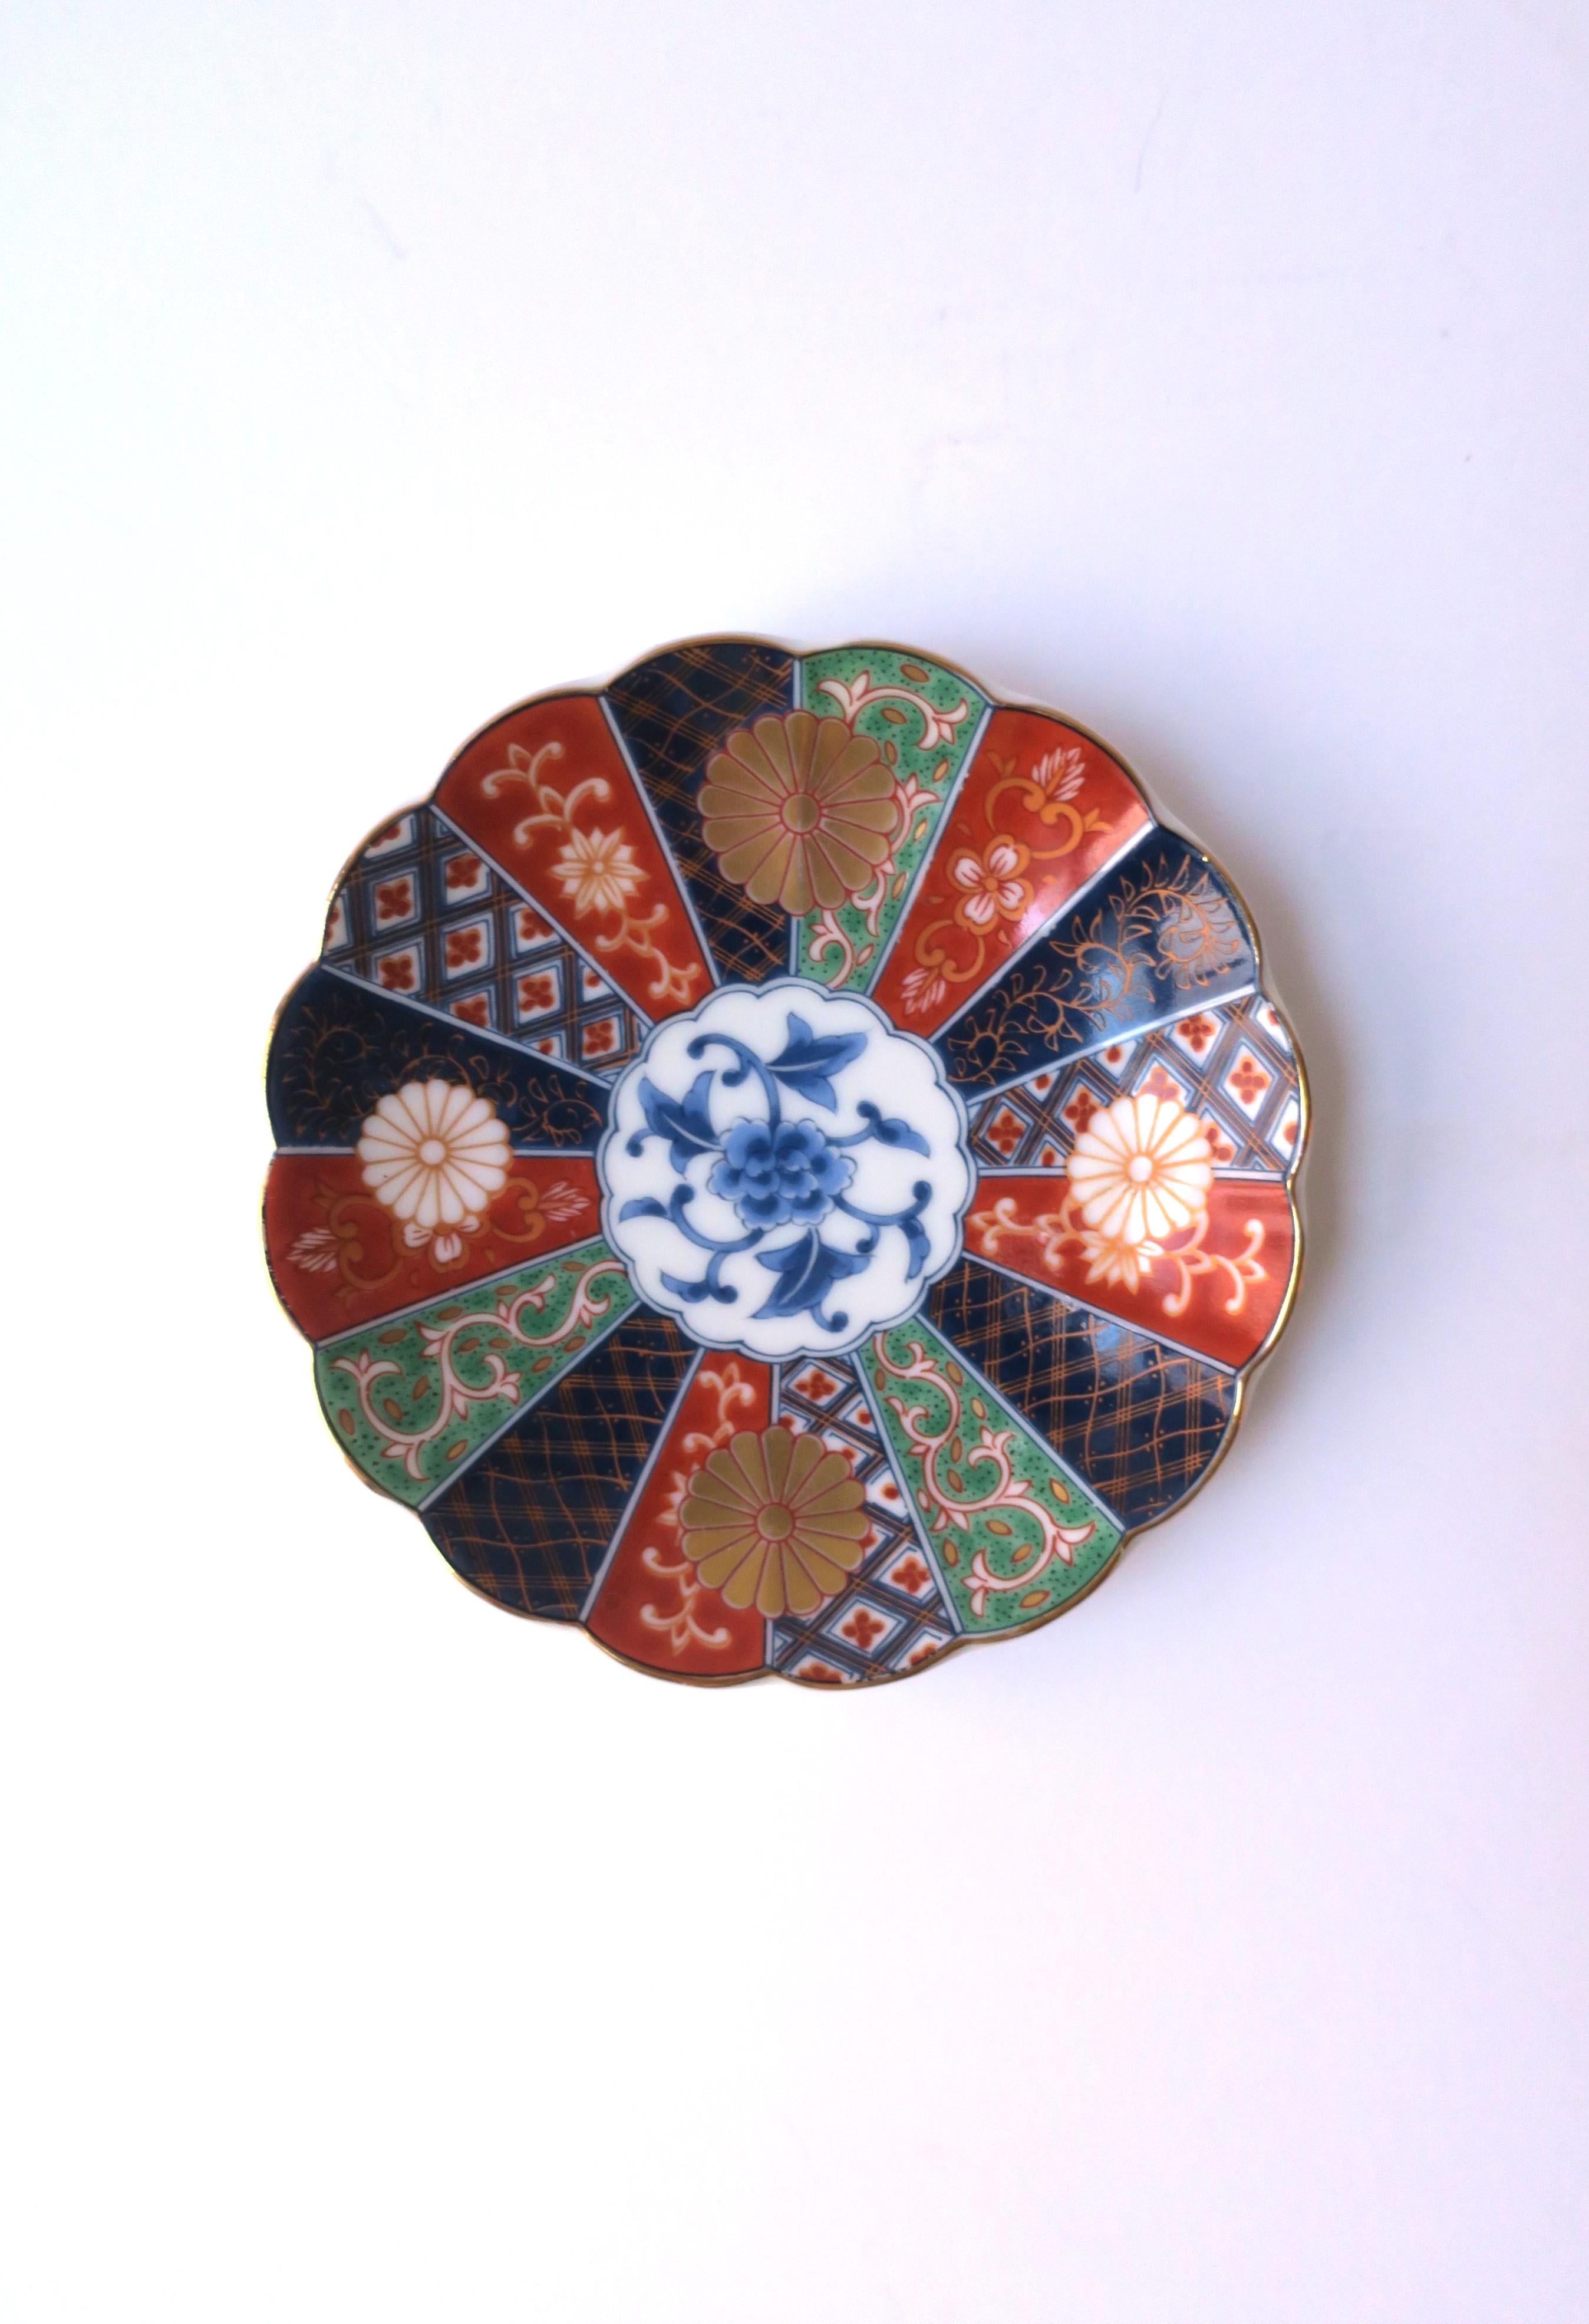 Schöne runde Schmuckschale aus Porzellan, handdekoriert, mit Wellenschliff, im anglo-japanischen Stil, 1987, USA. Das Stück wird sowohl in Japan als auch in den Vereinigten Staaten hergestellt. Die Farben umfassen einen weißen Porzellangrund, Blau,